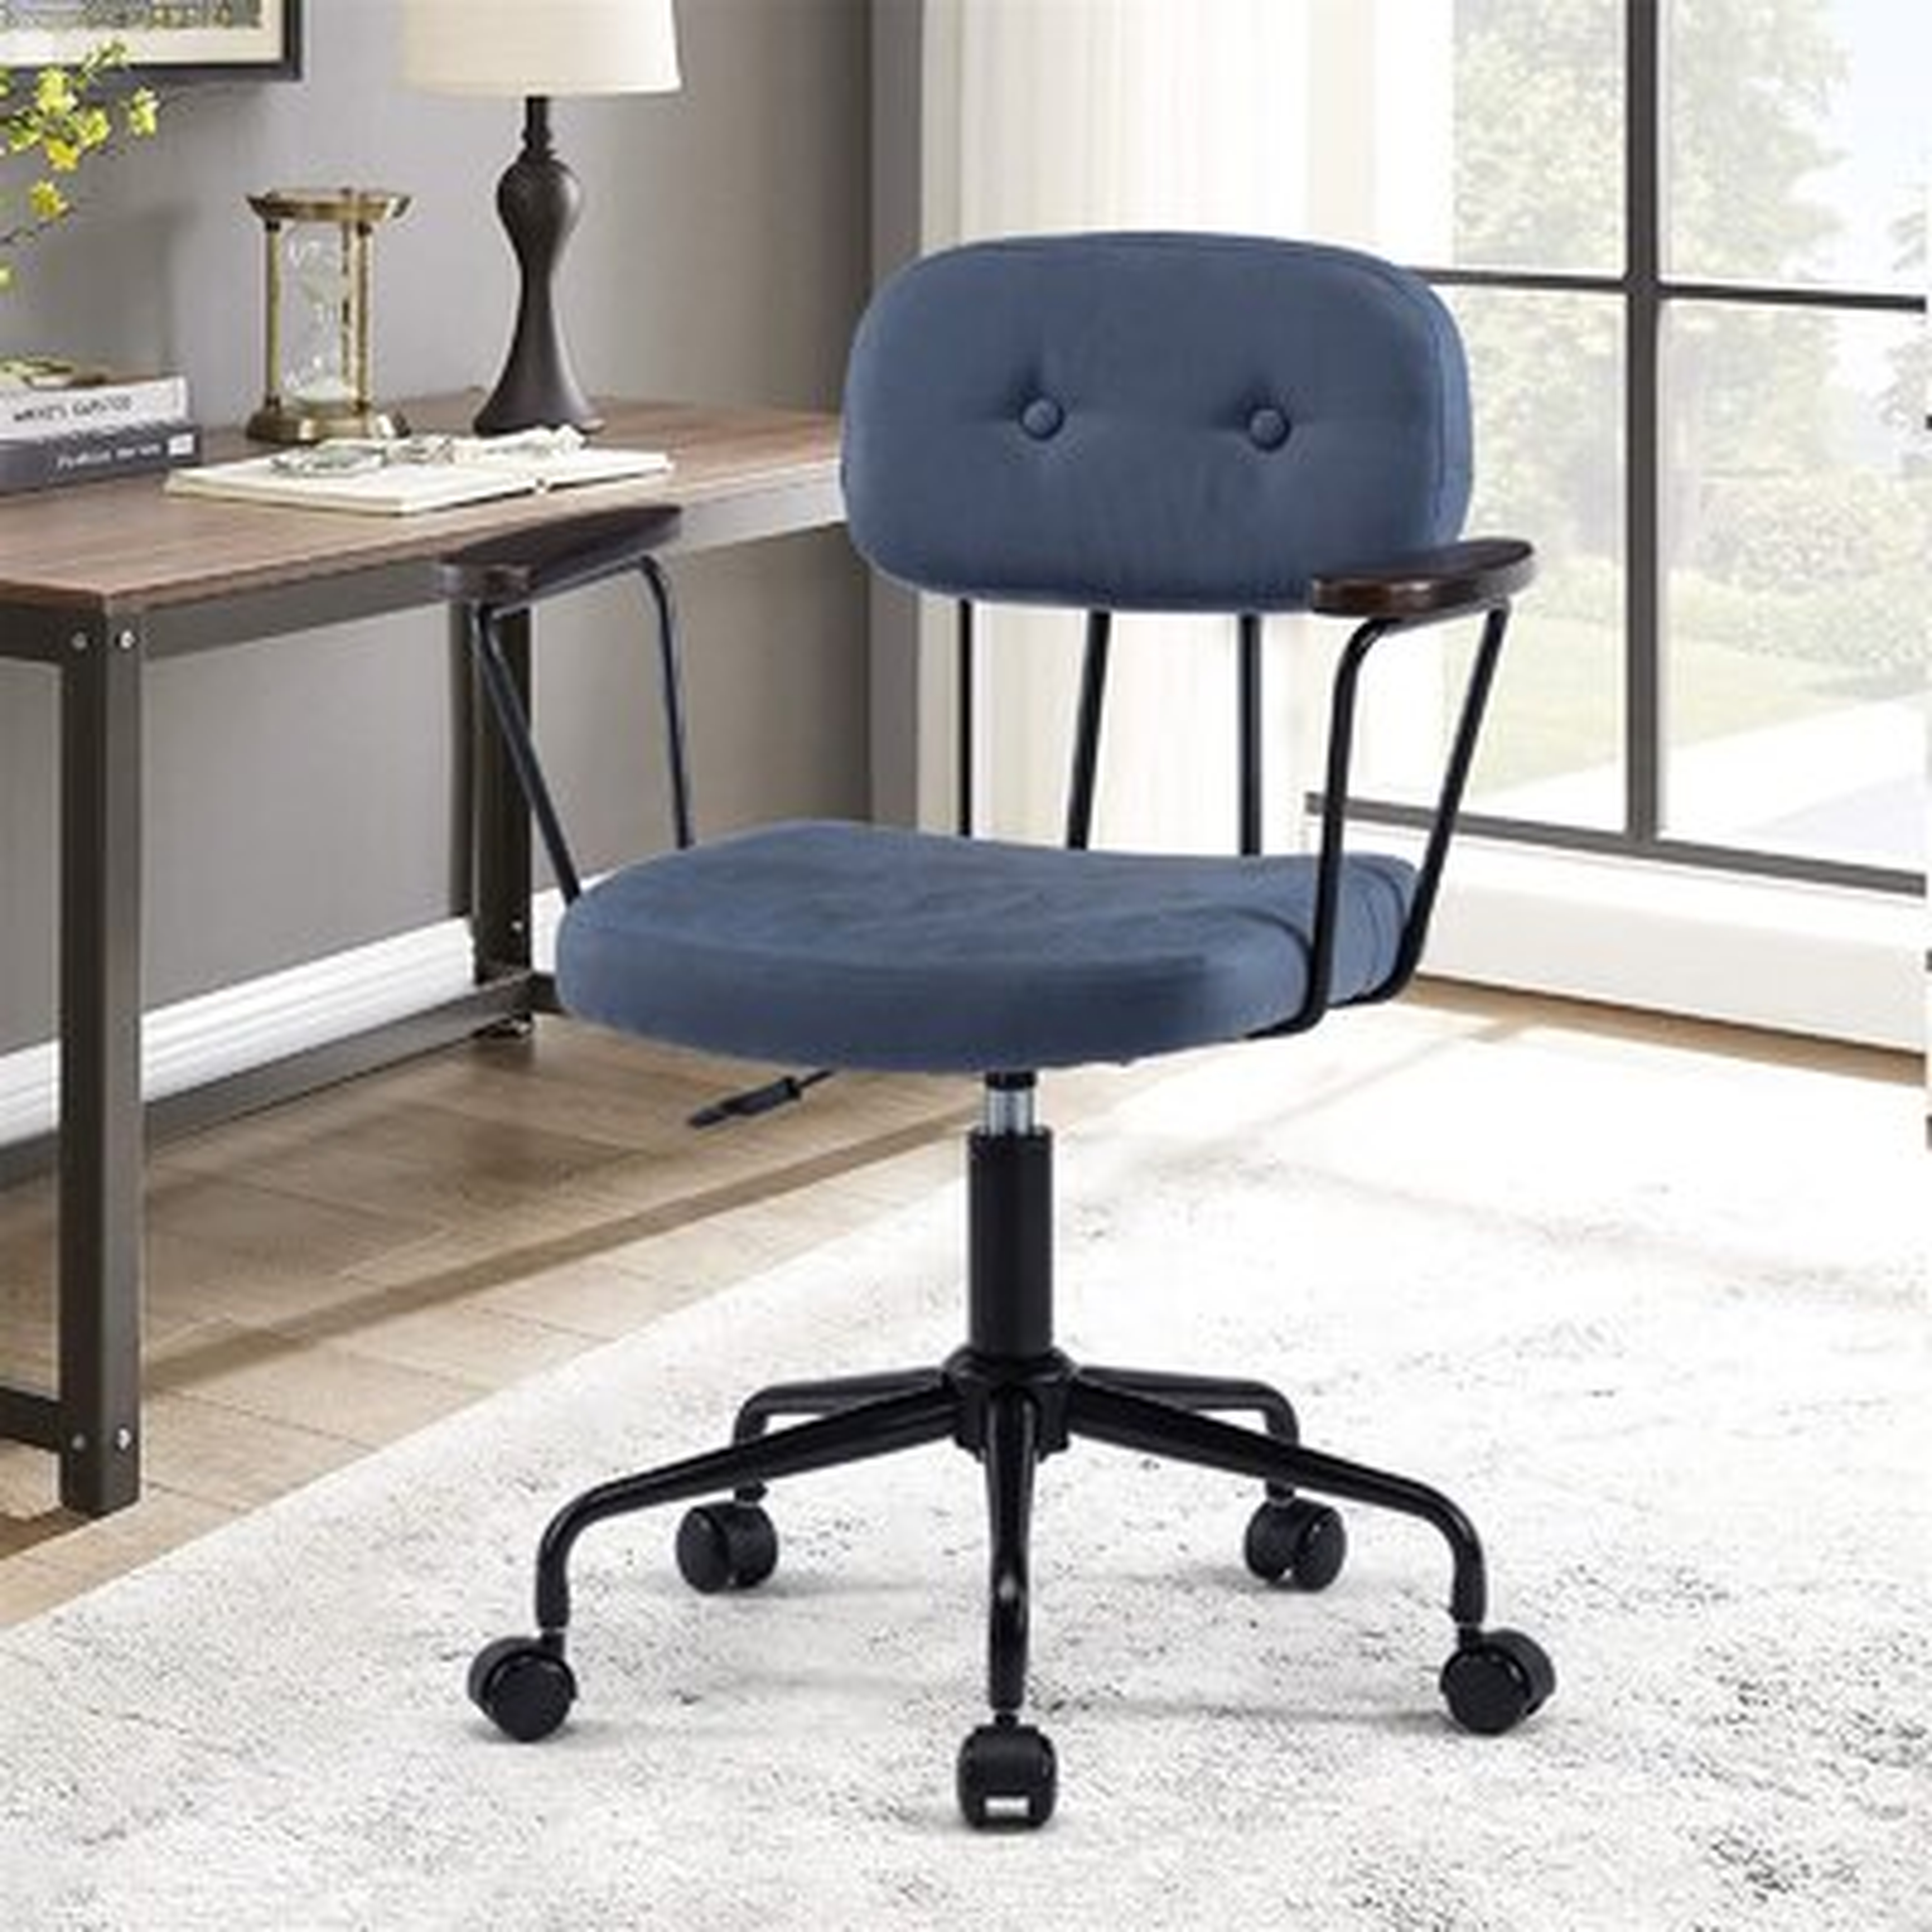 Swivel Office Chair For Living Room - Wayfair